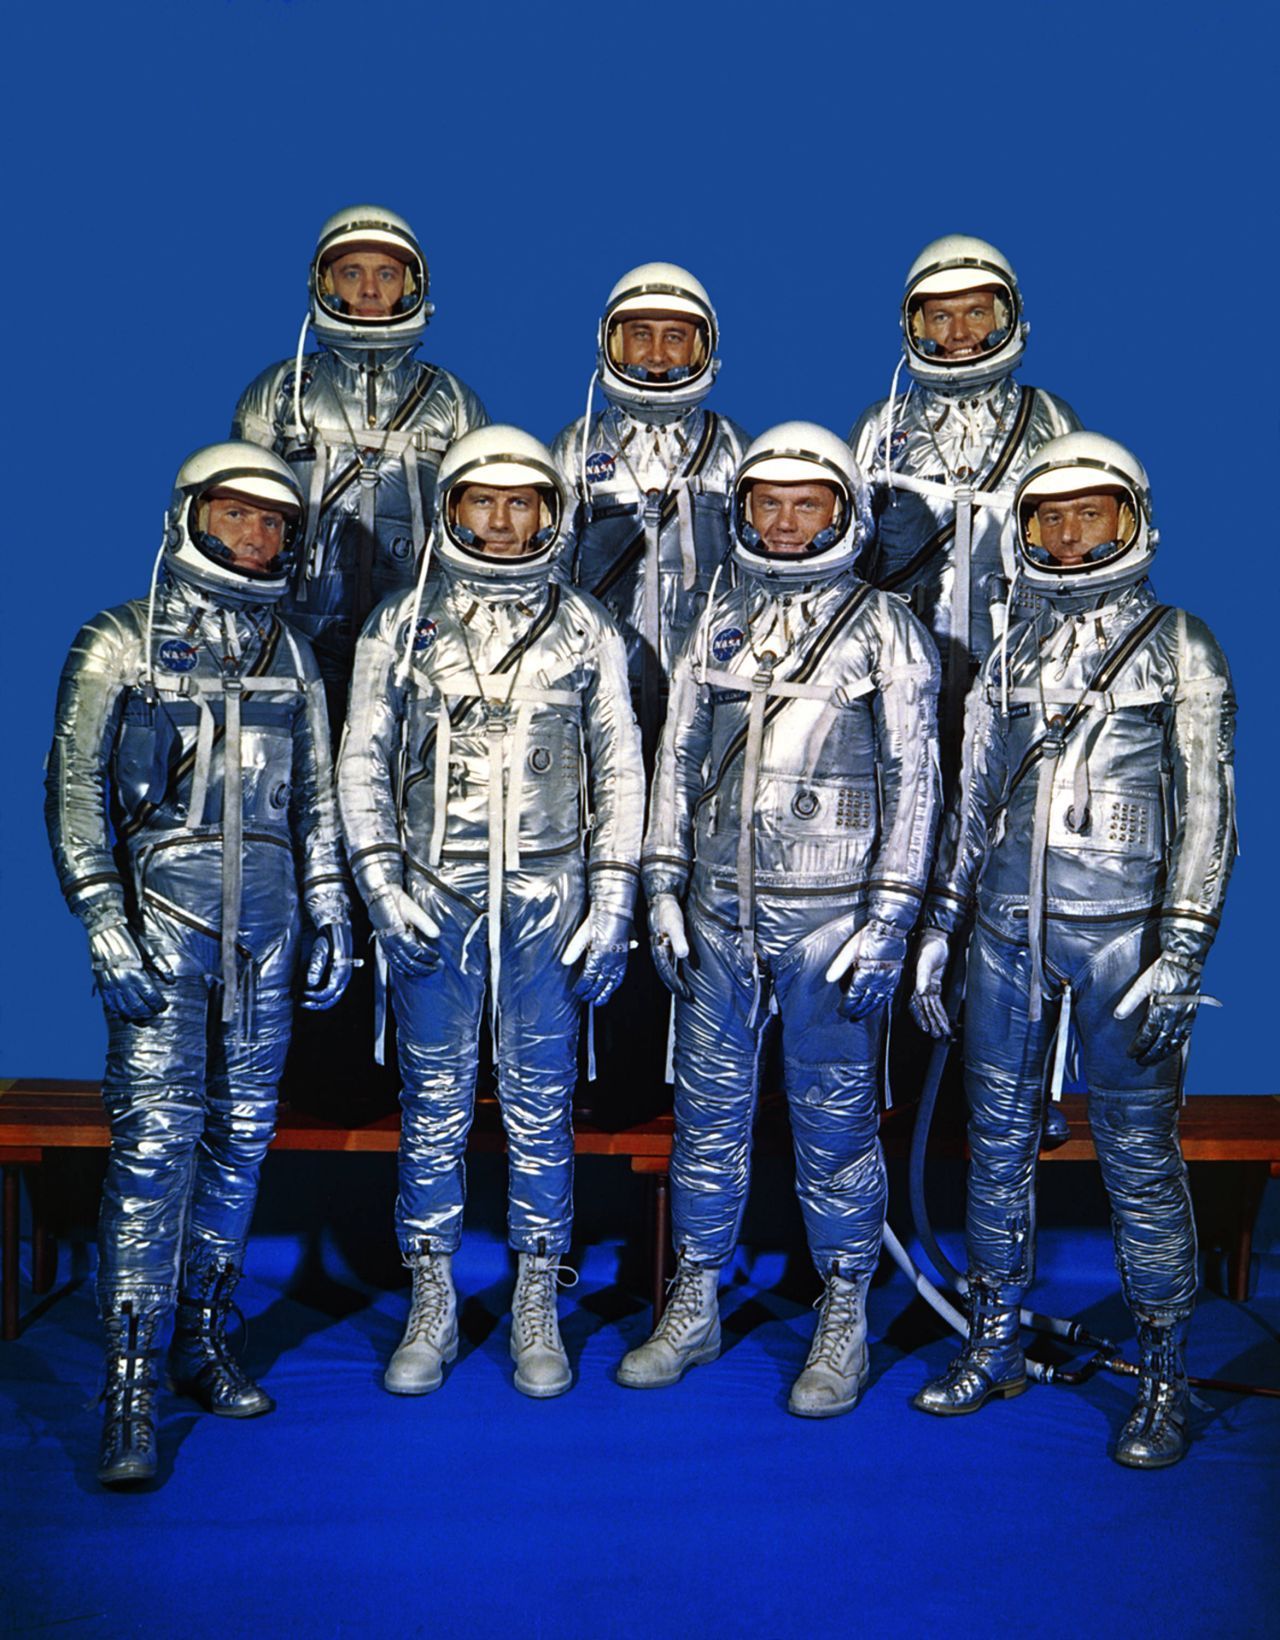 1959 präsentiert die NASA ihr erstes Astronauten-Team, die Mercury Seven. Alan Shepard (hinten links) wird fünf Jahre später der erste Amerikaner im All sein. Die Mercury-Anzüge bestanden aus aluminiumbeschichtetem Nylon und Neopren. Da sie nicht unter Druck stehen mussten, waren sie weich und damit angenehm zu tragen.